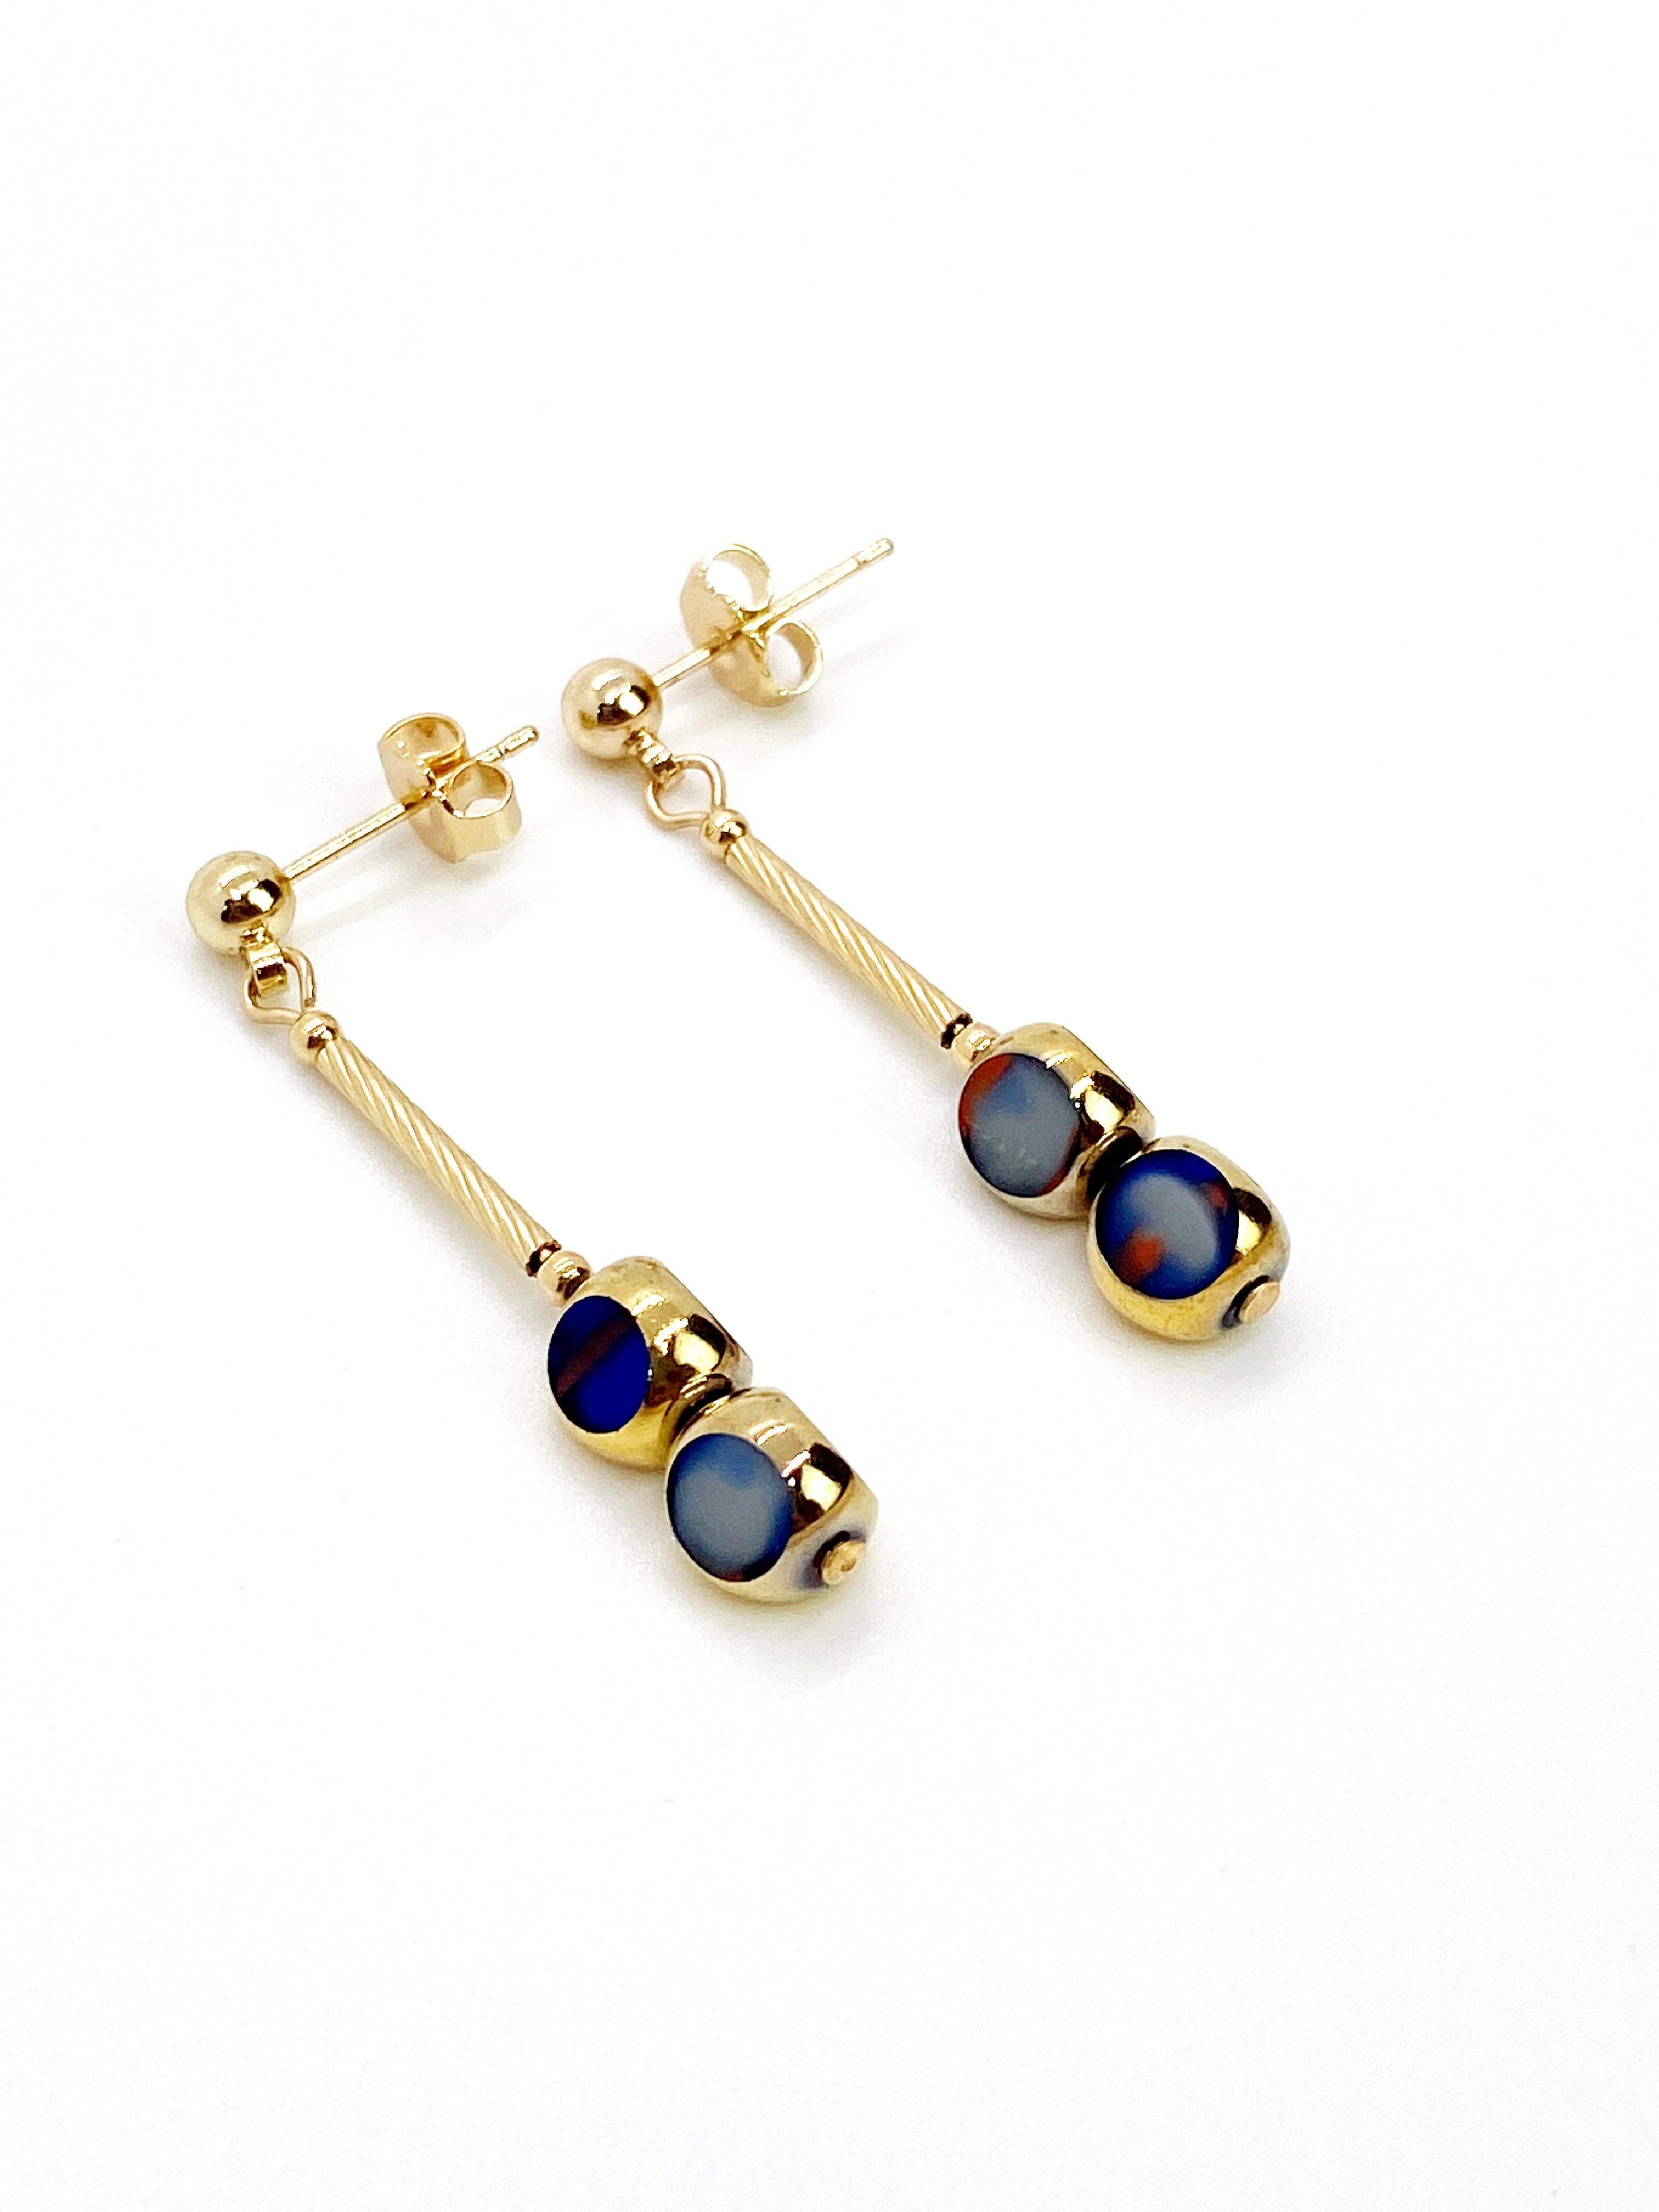 blue glass earrings